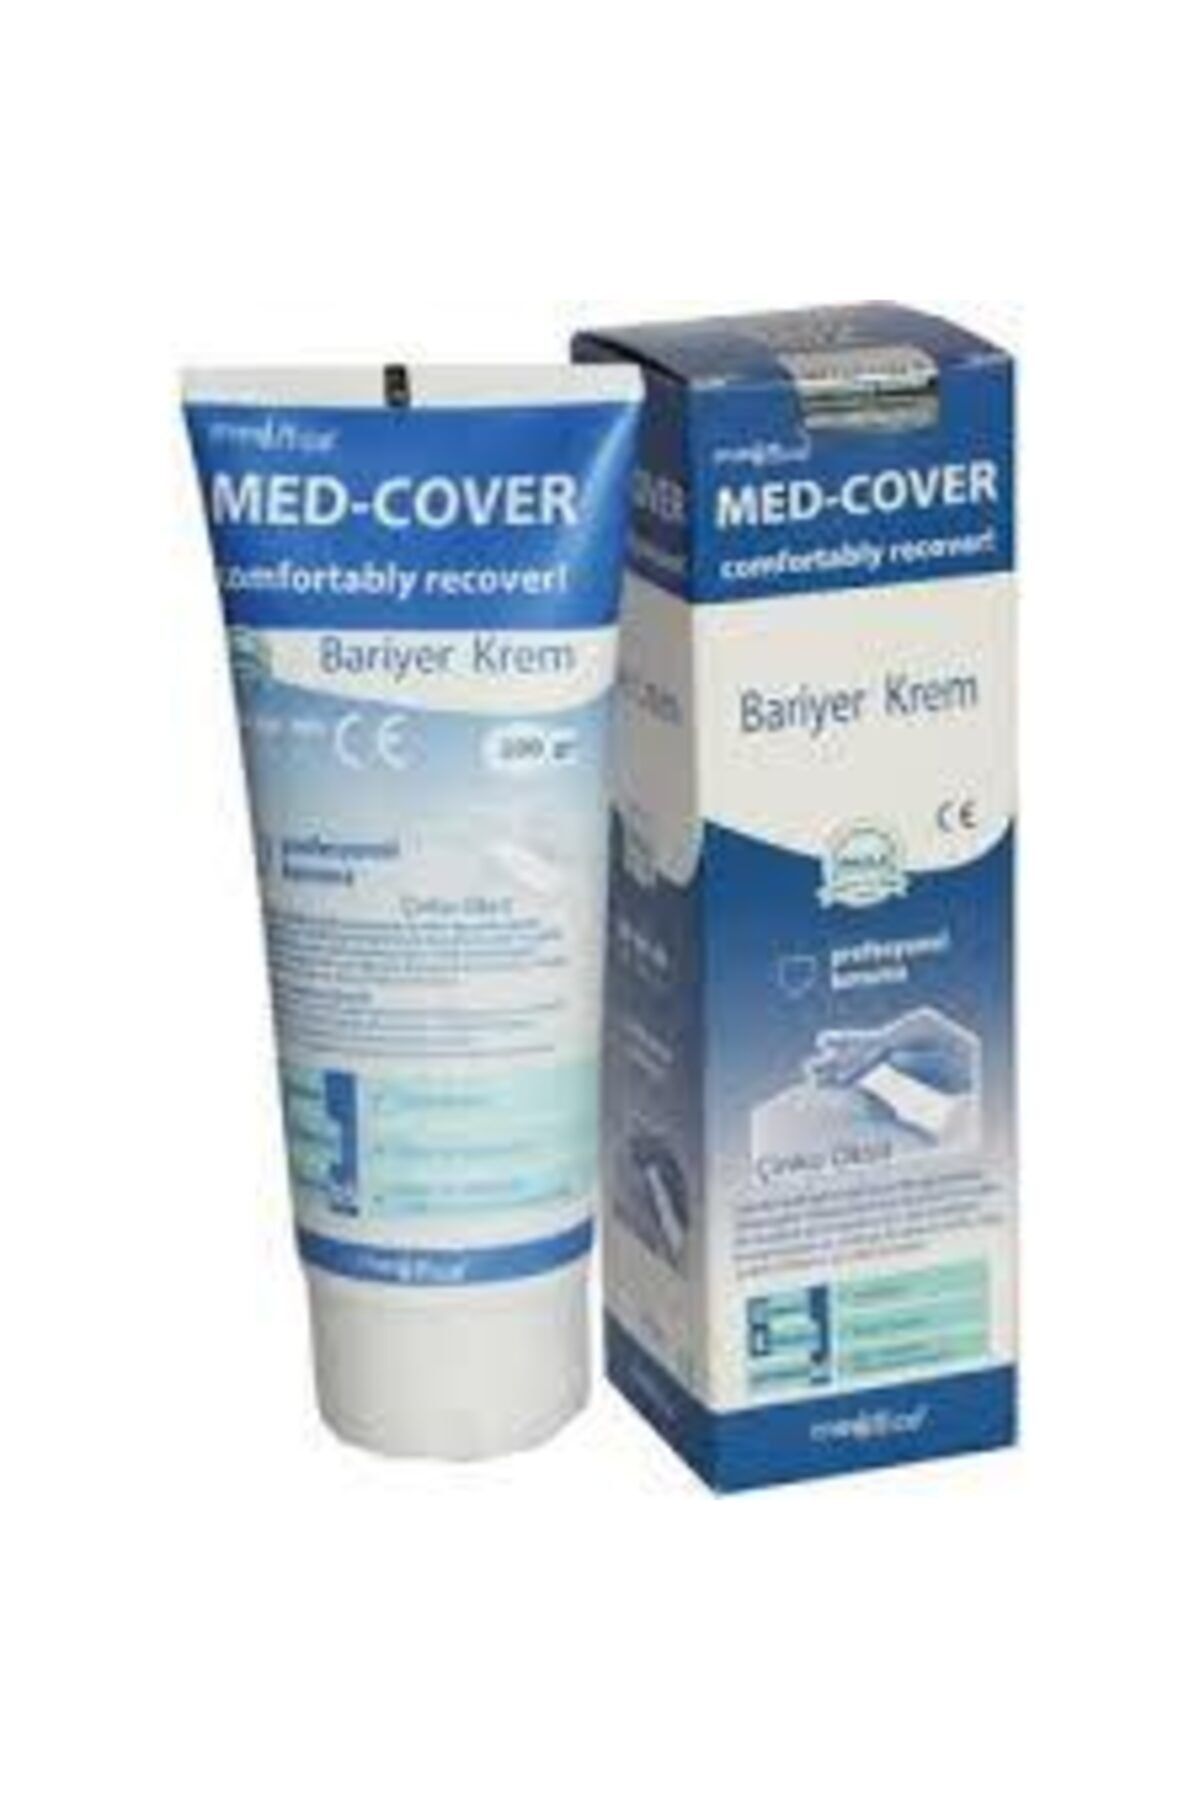 Medcover Med Cover Çinko Oksitli Bariyer Krem 100 Gr